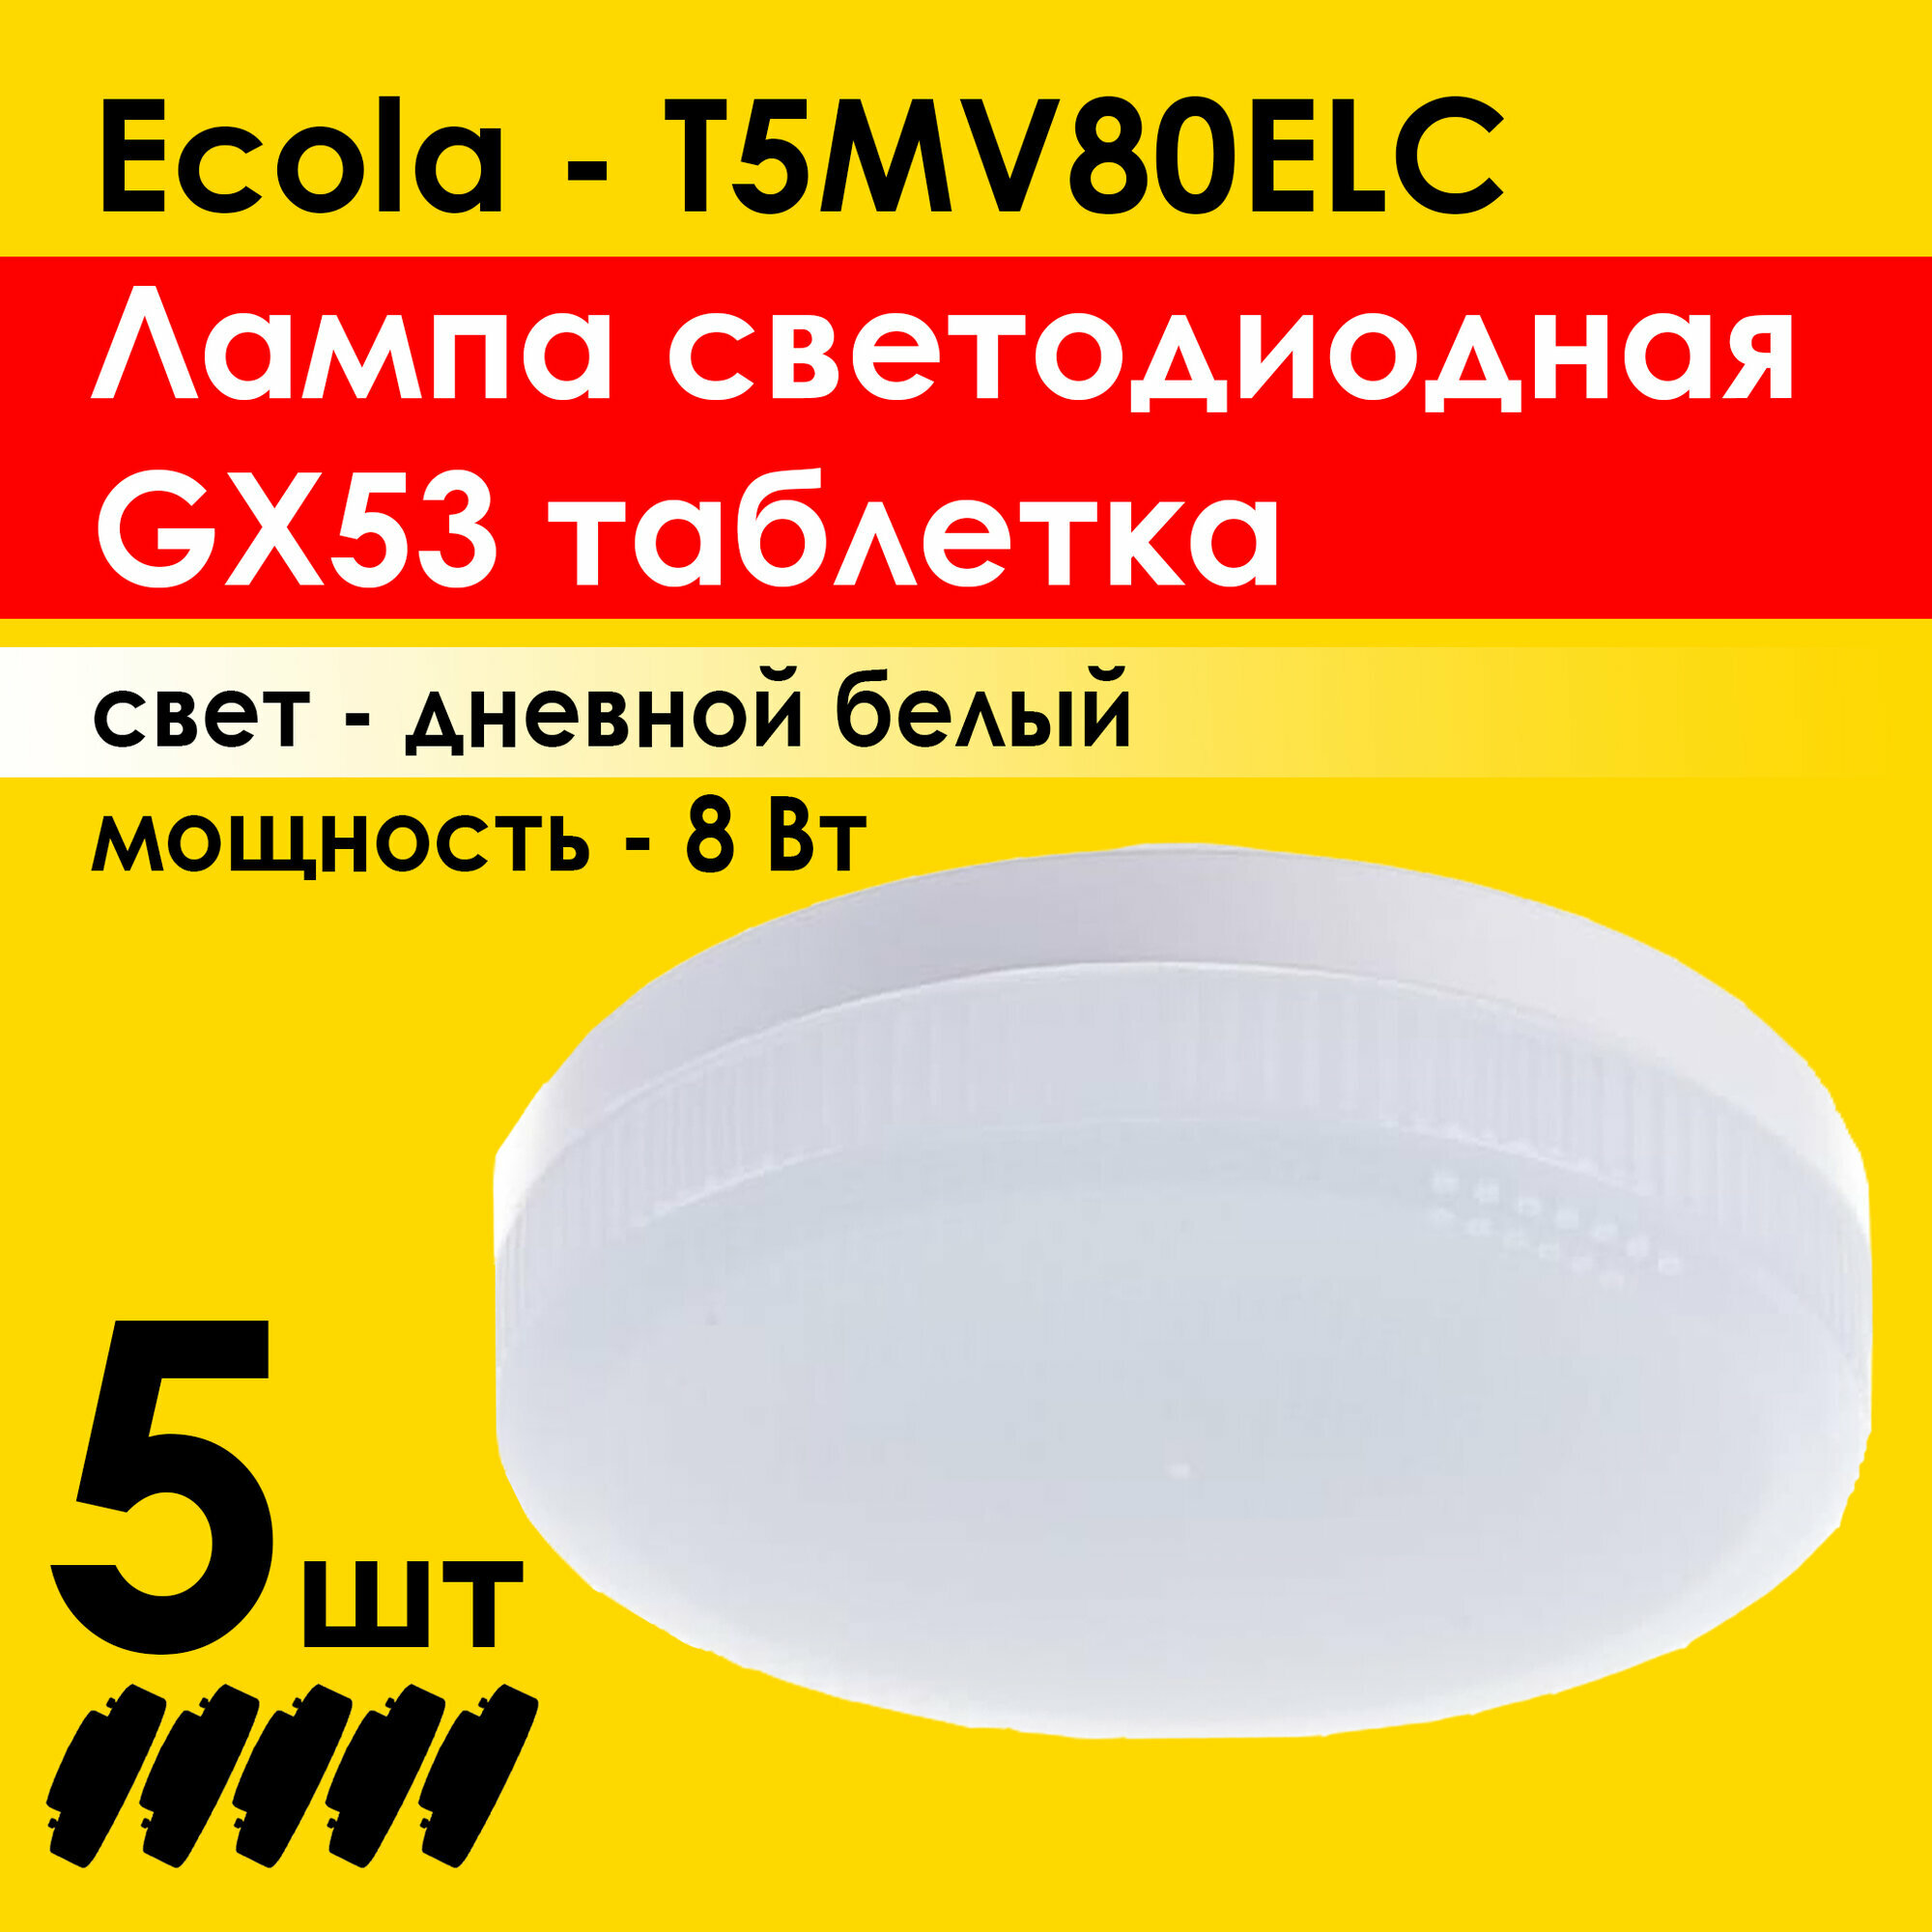 Лампочка светодиодная (5штук) Ecola Light GX53 LED. Мощность 8,0W 4200K (T5MV80ELC)